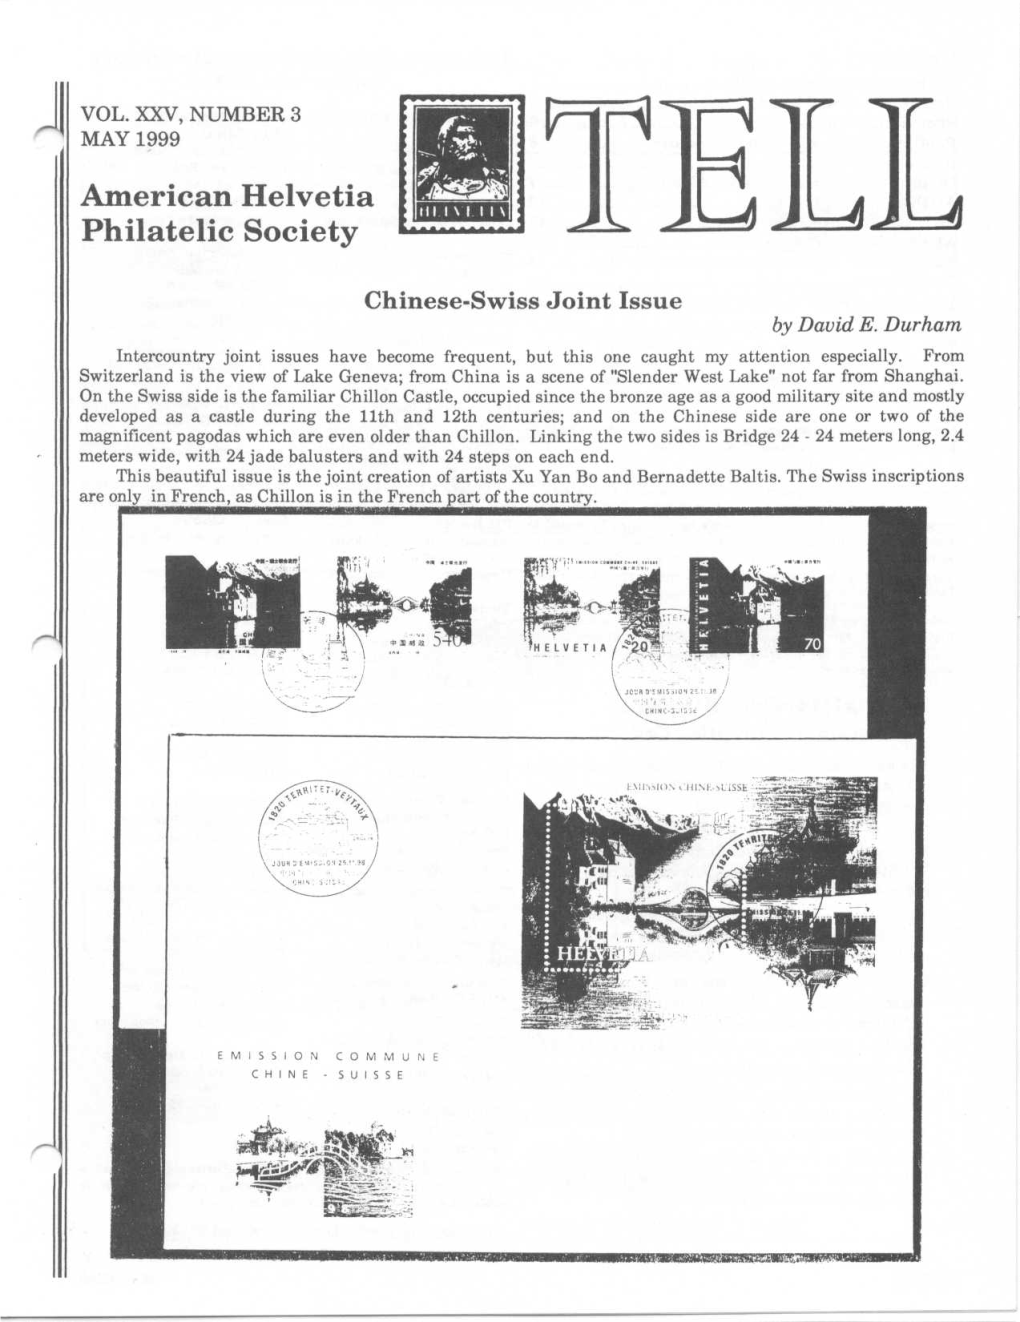 American Helvetia Philatelic Society